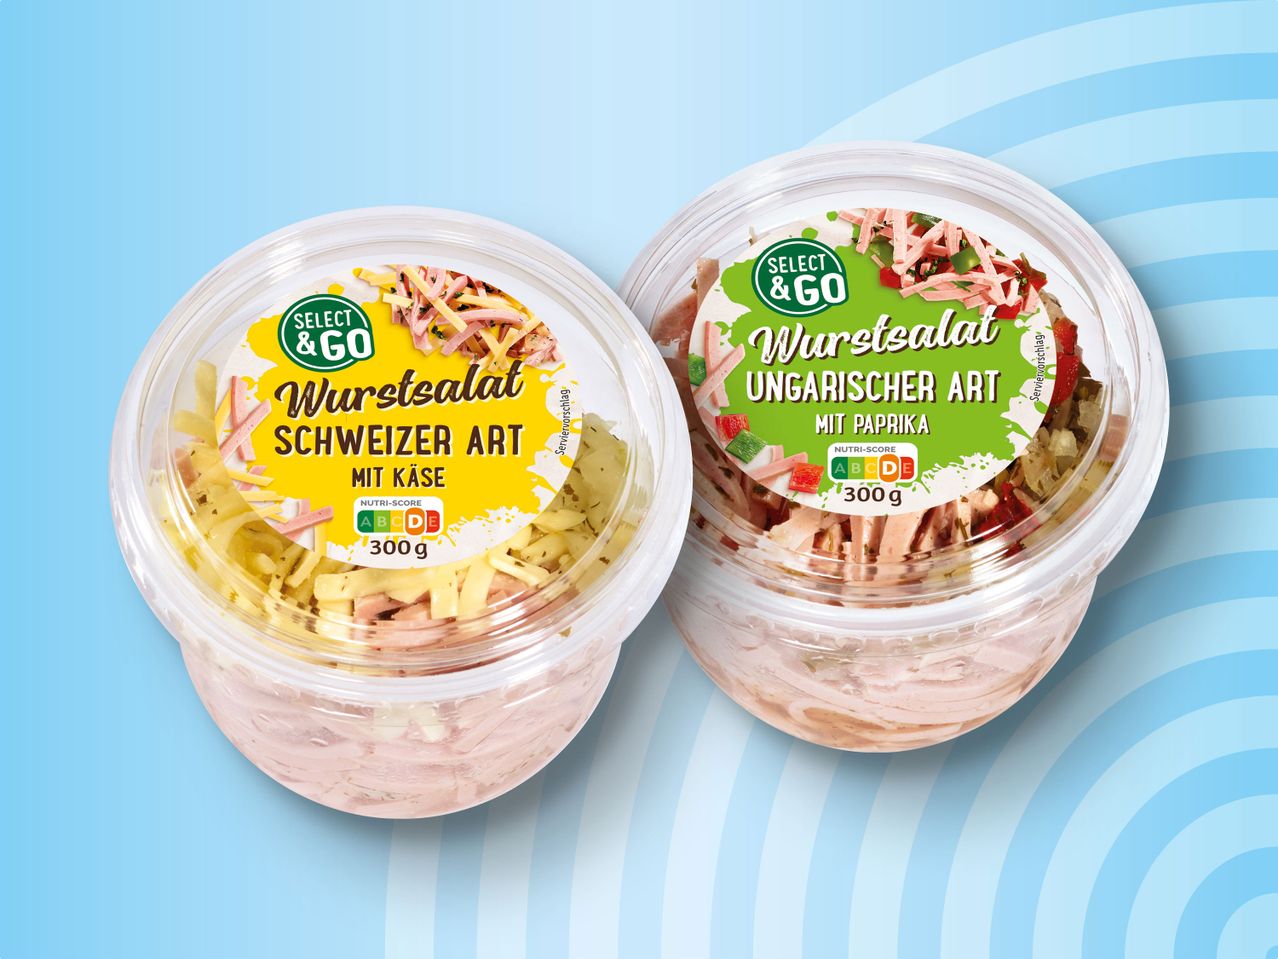 Go Select Becher Wurstsalat im &